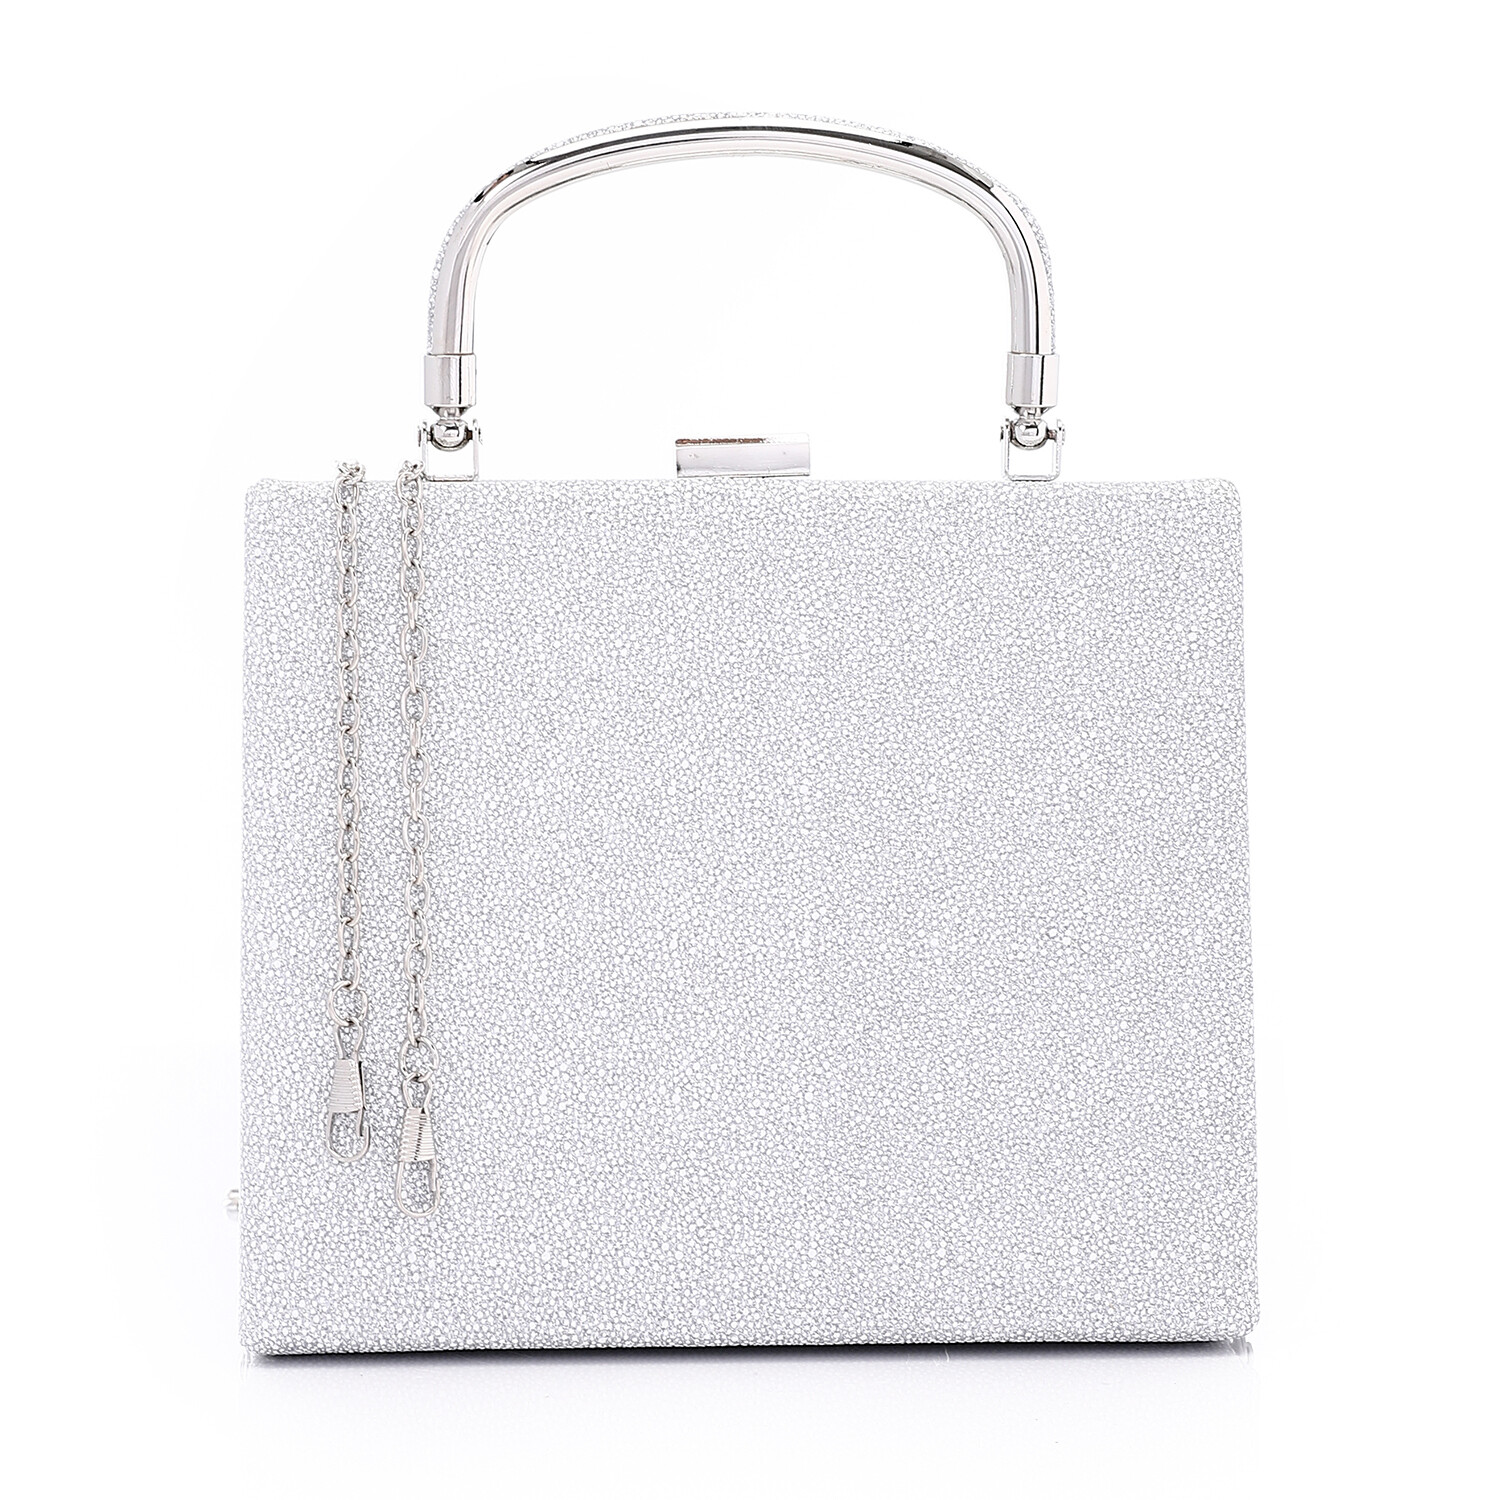 Press Button Closure Glittery Handbag - Silver 4995